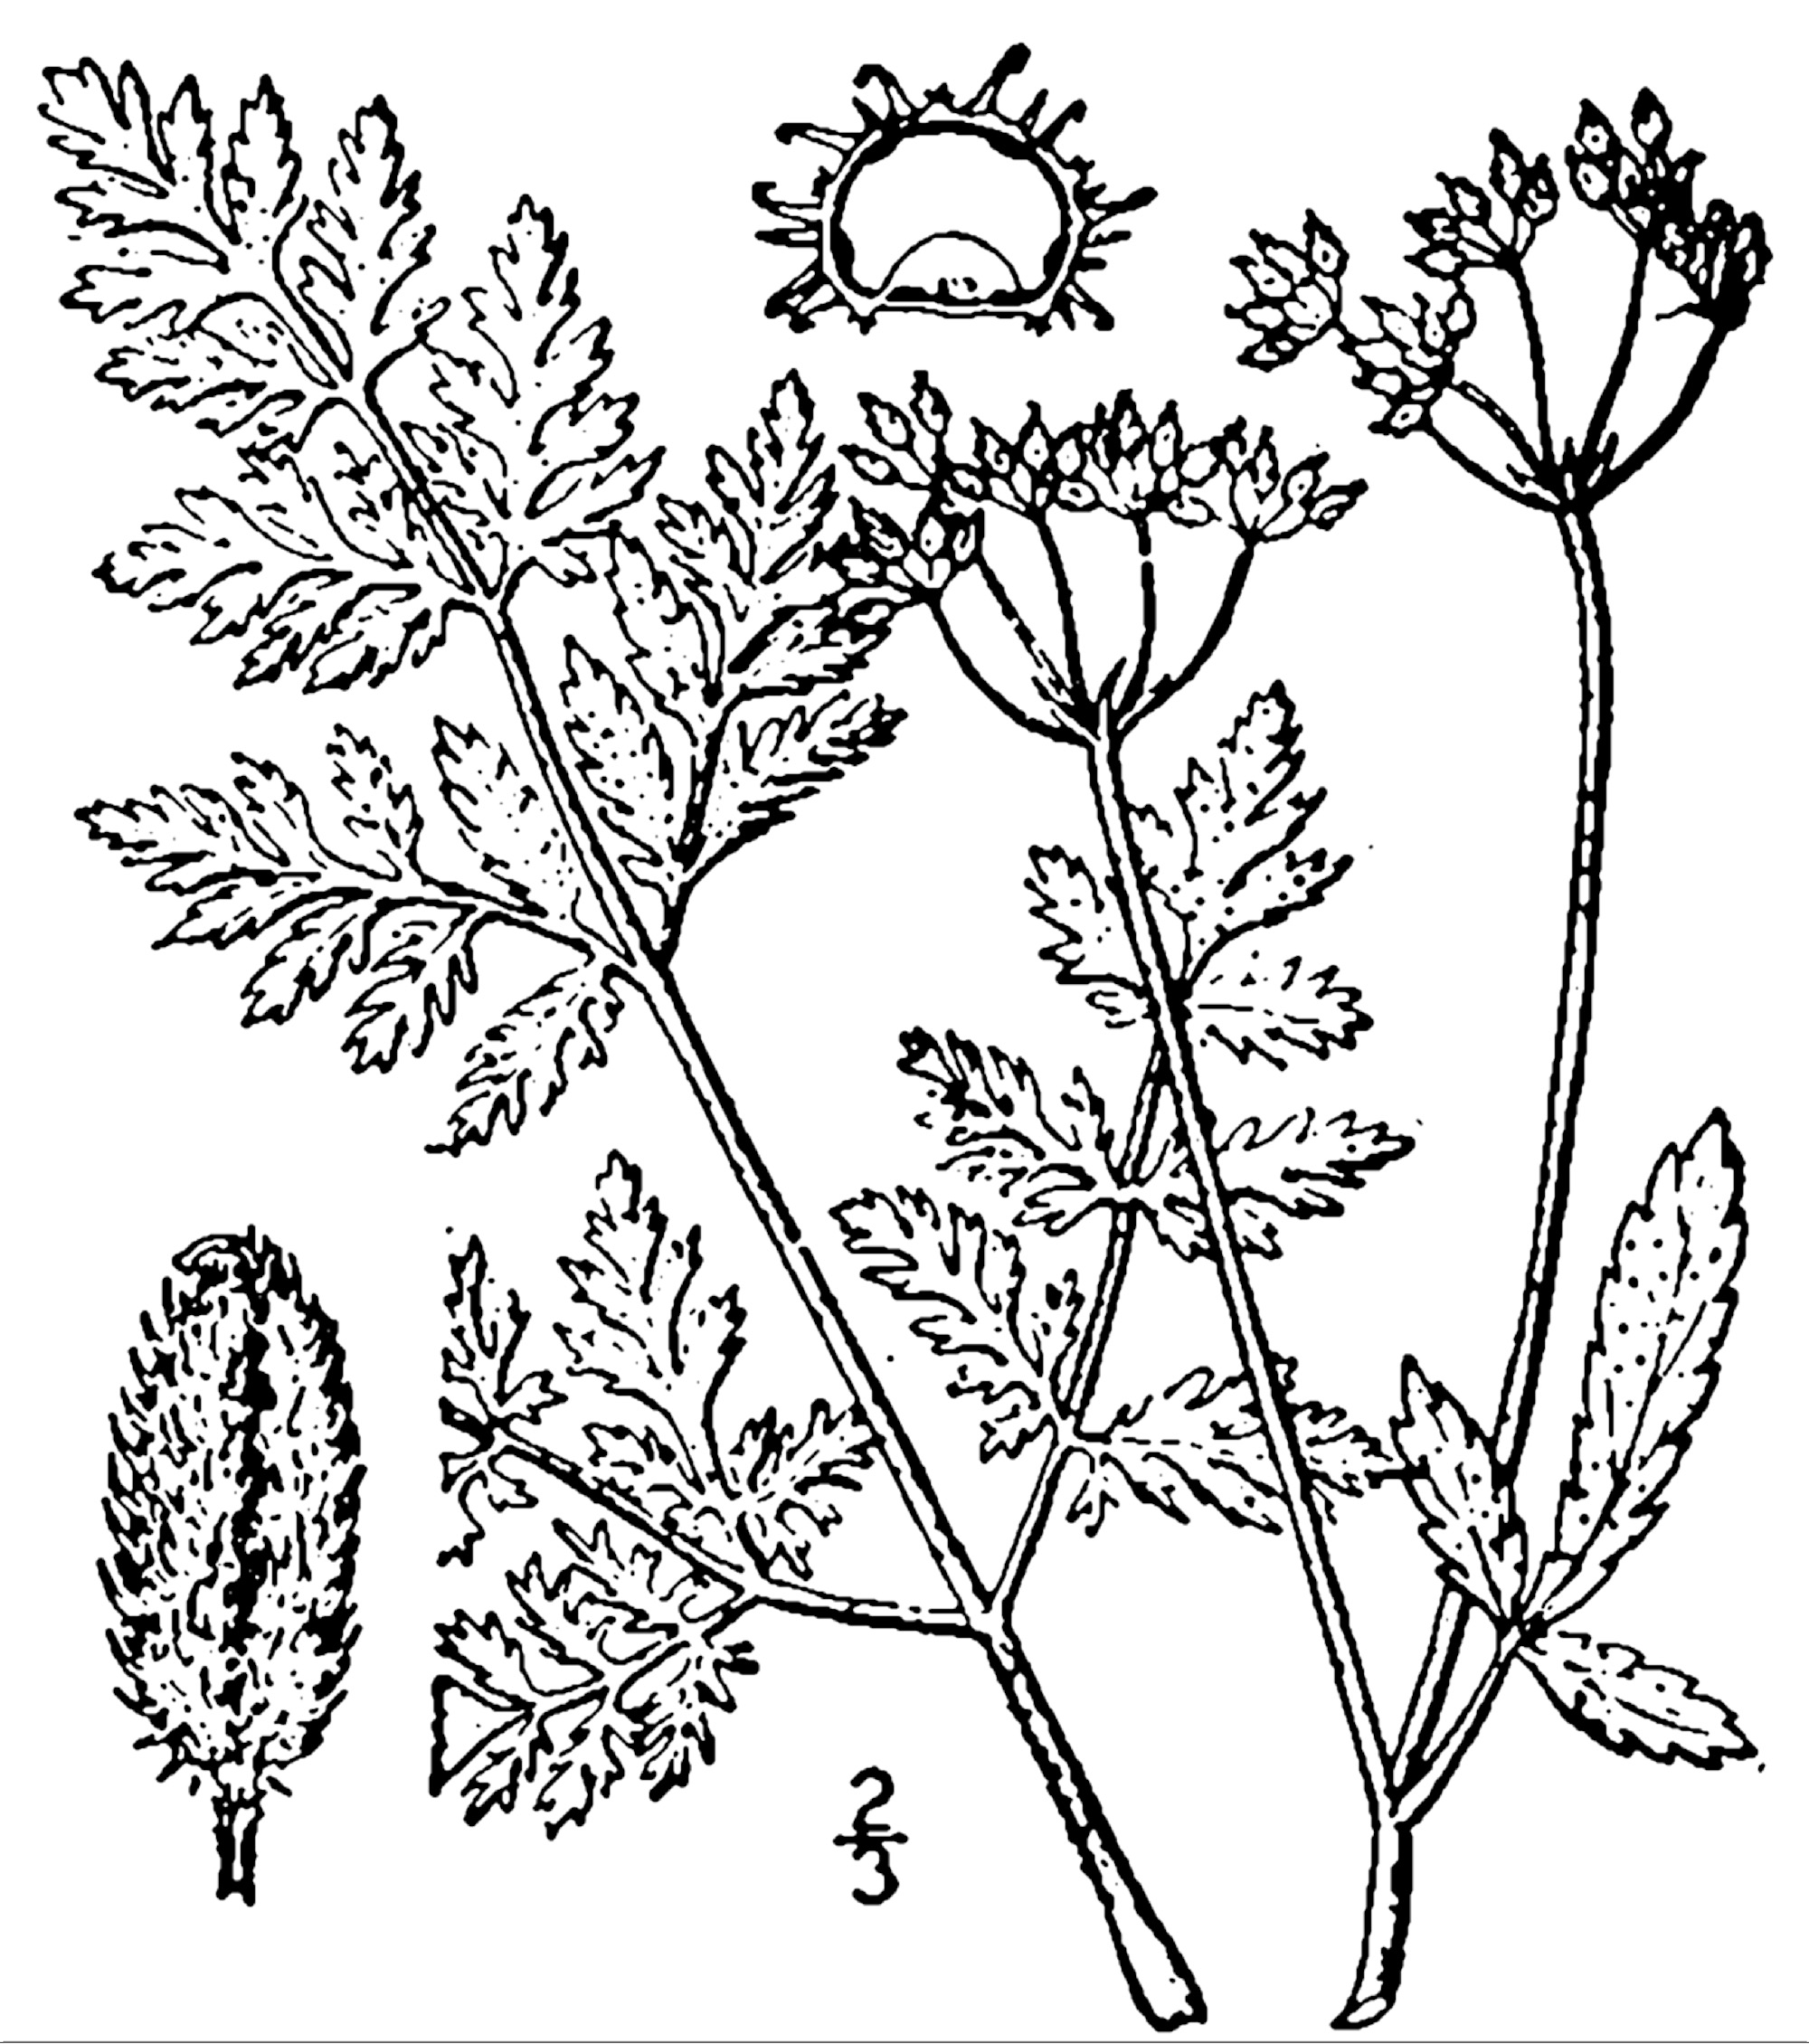 1913 Erect Hedge Parsley Botanical drawing.